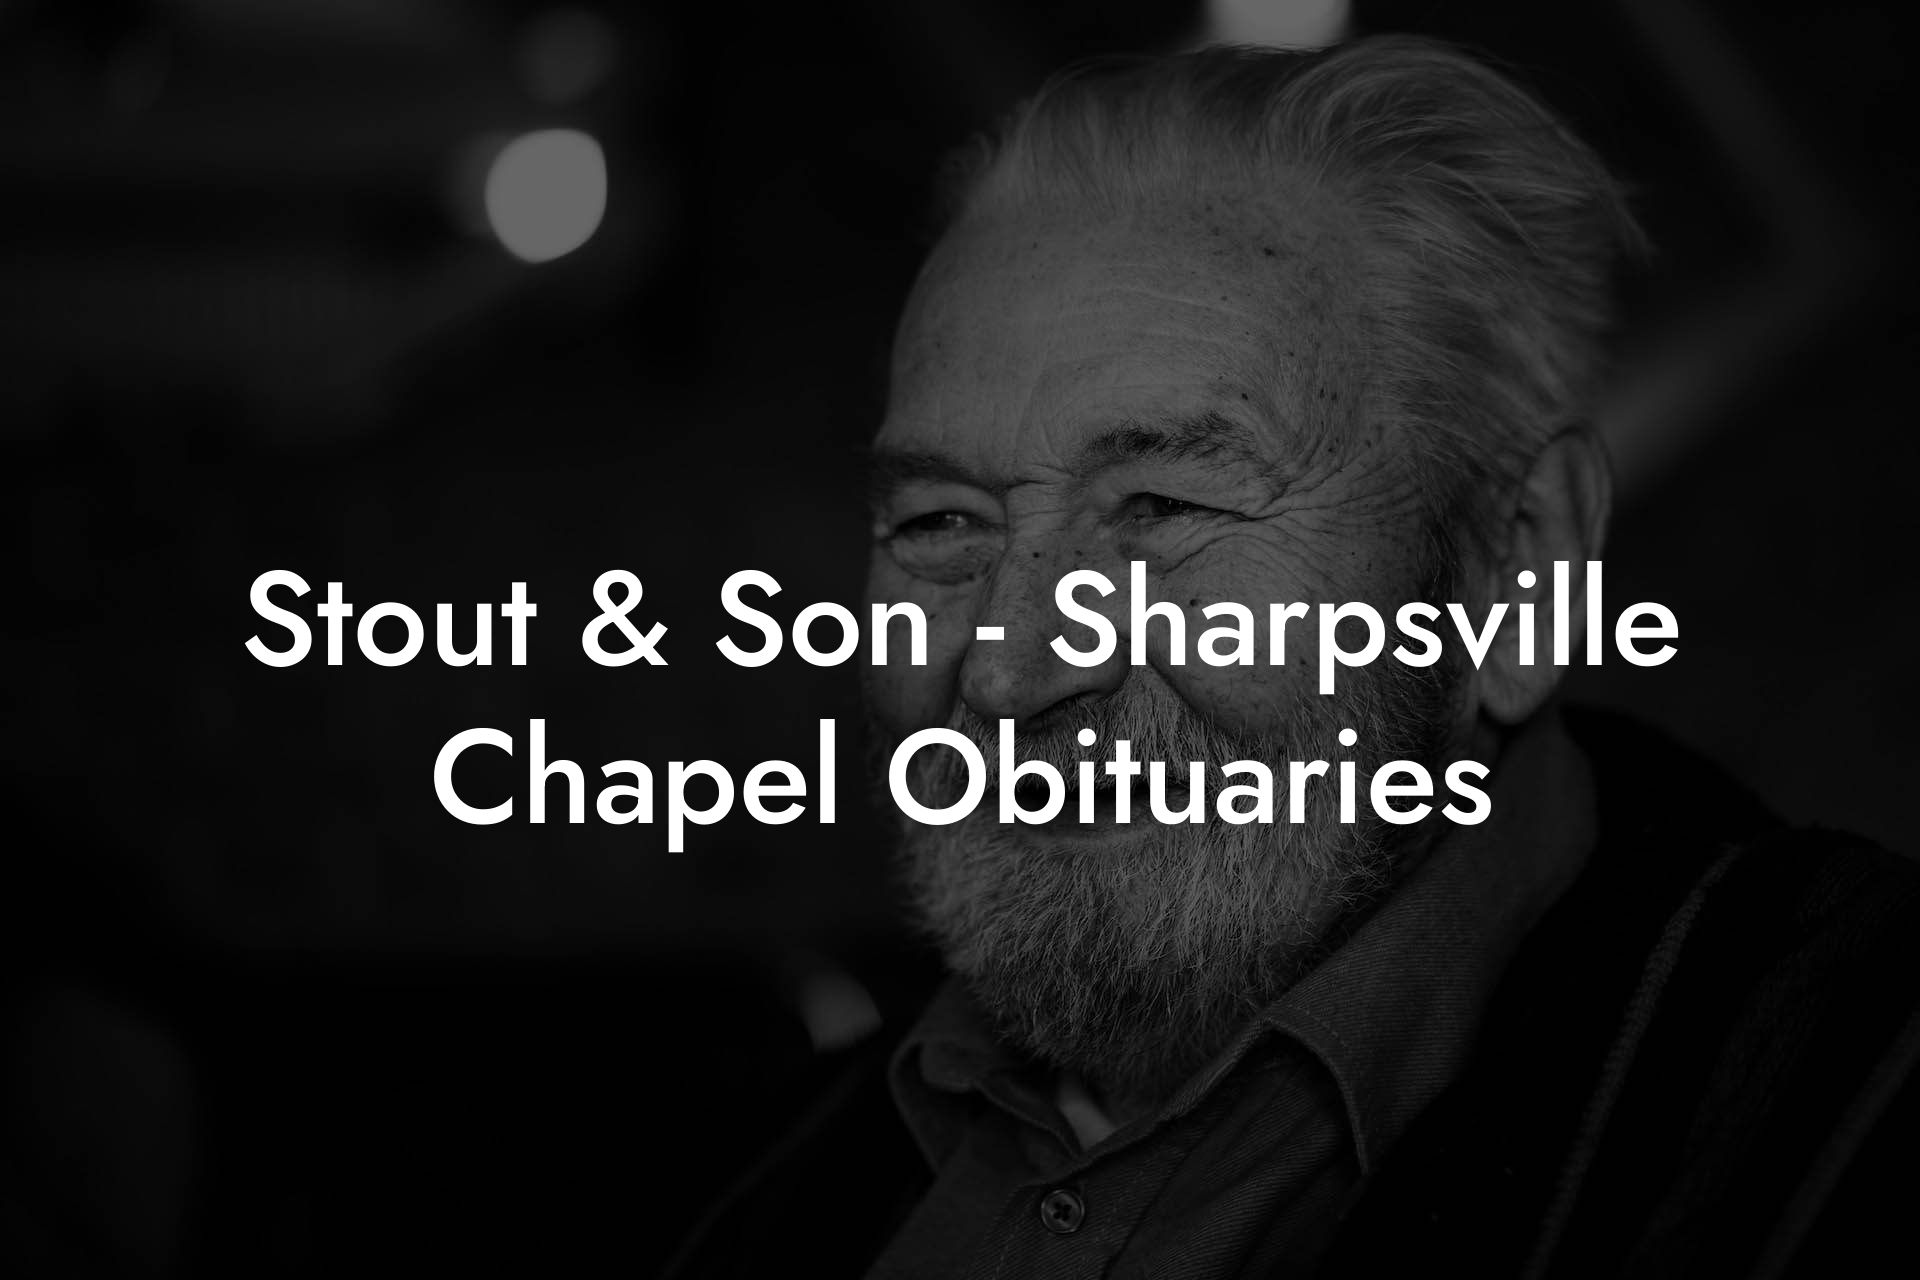 Stout & Son - Sharpsville Chapel Obituaries